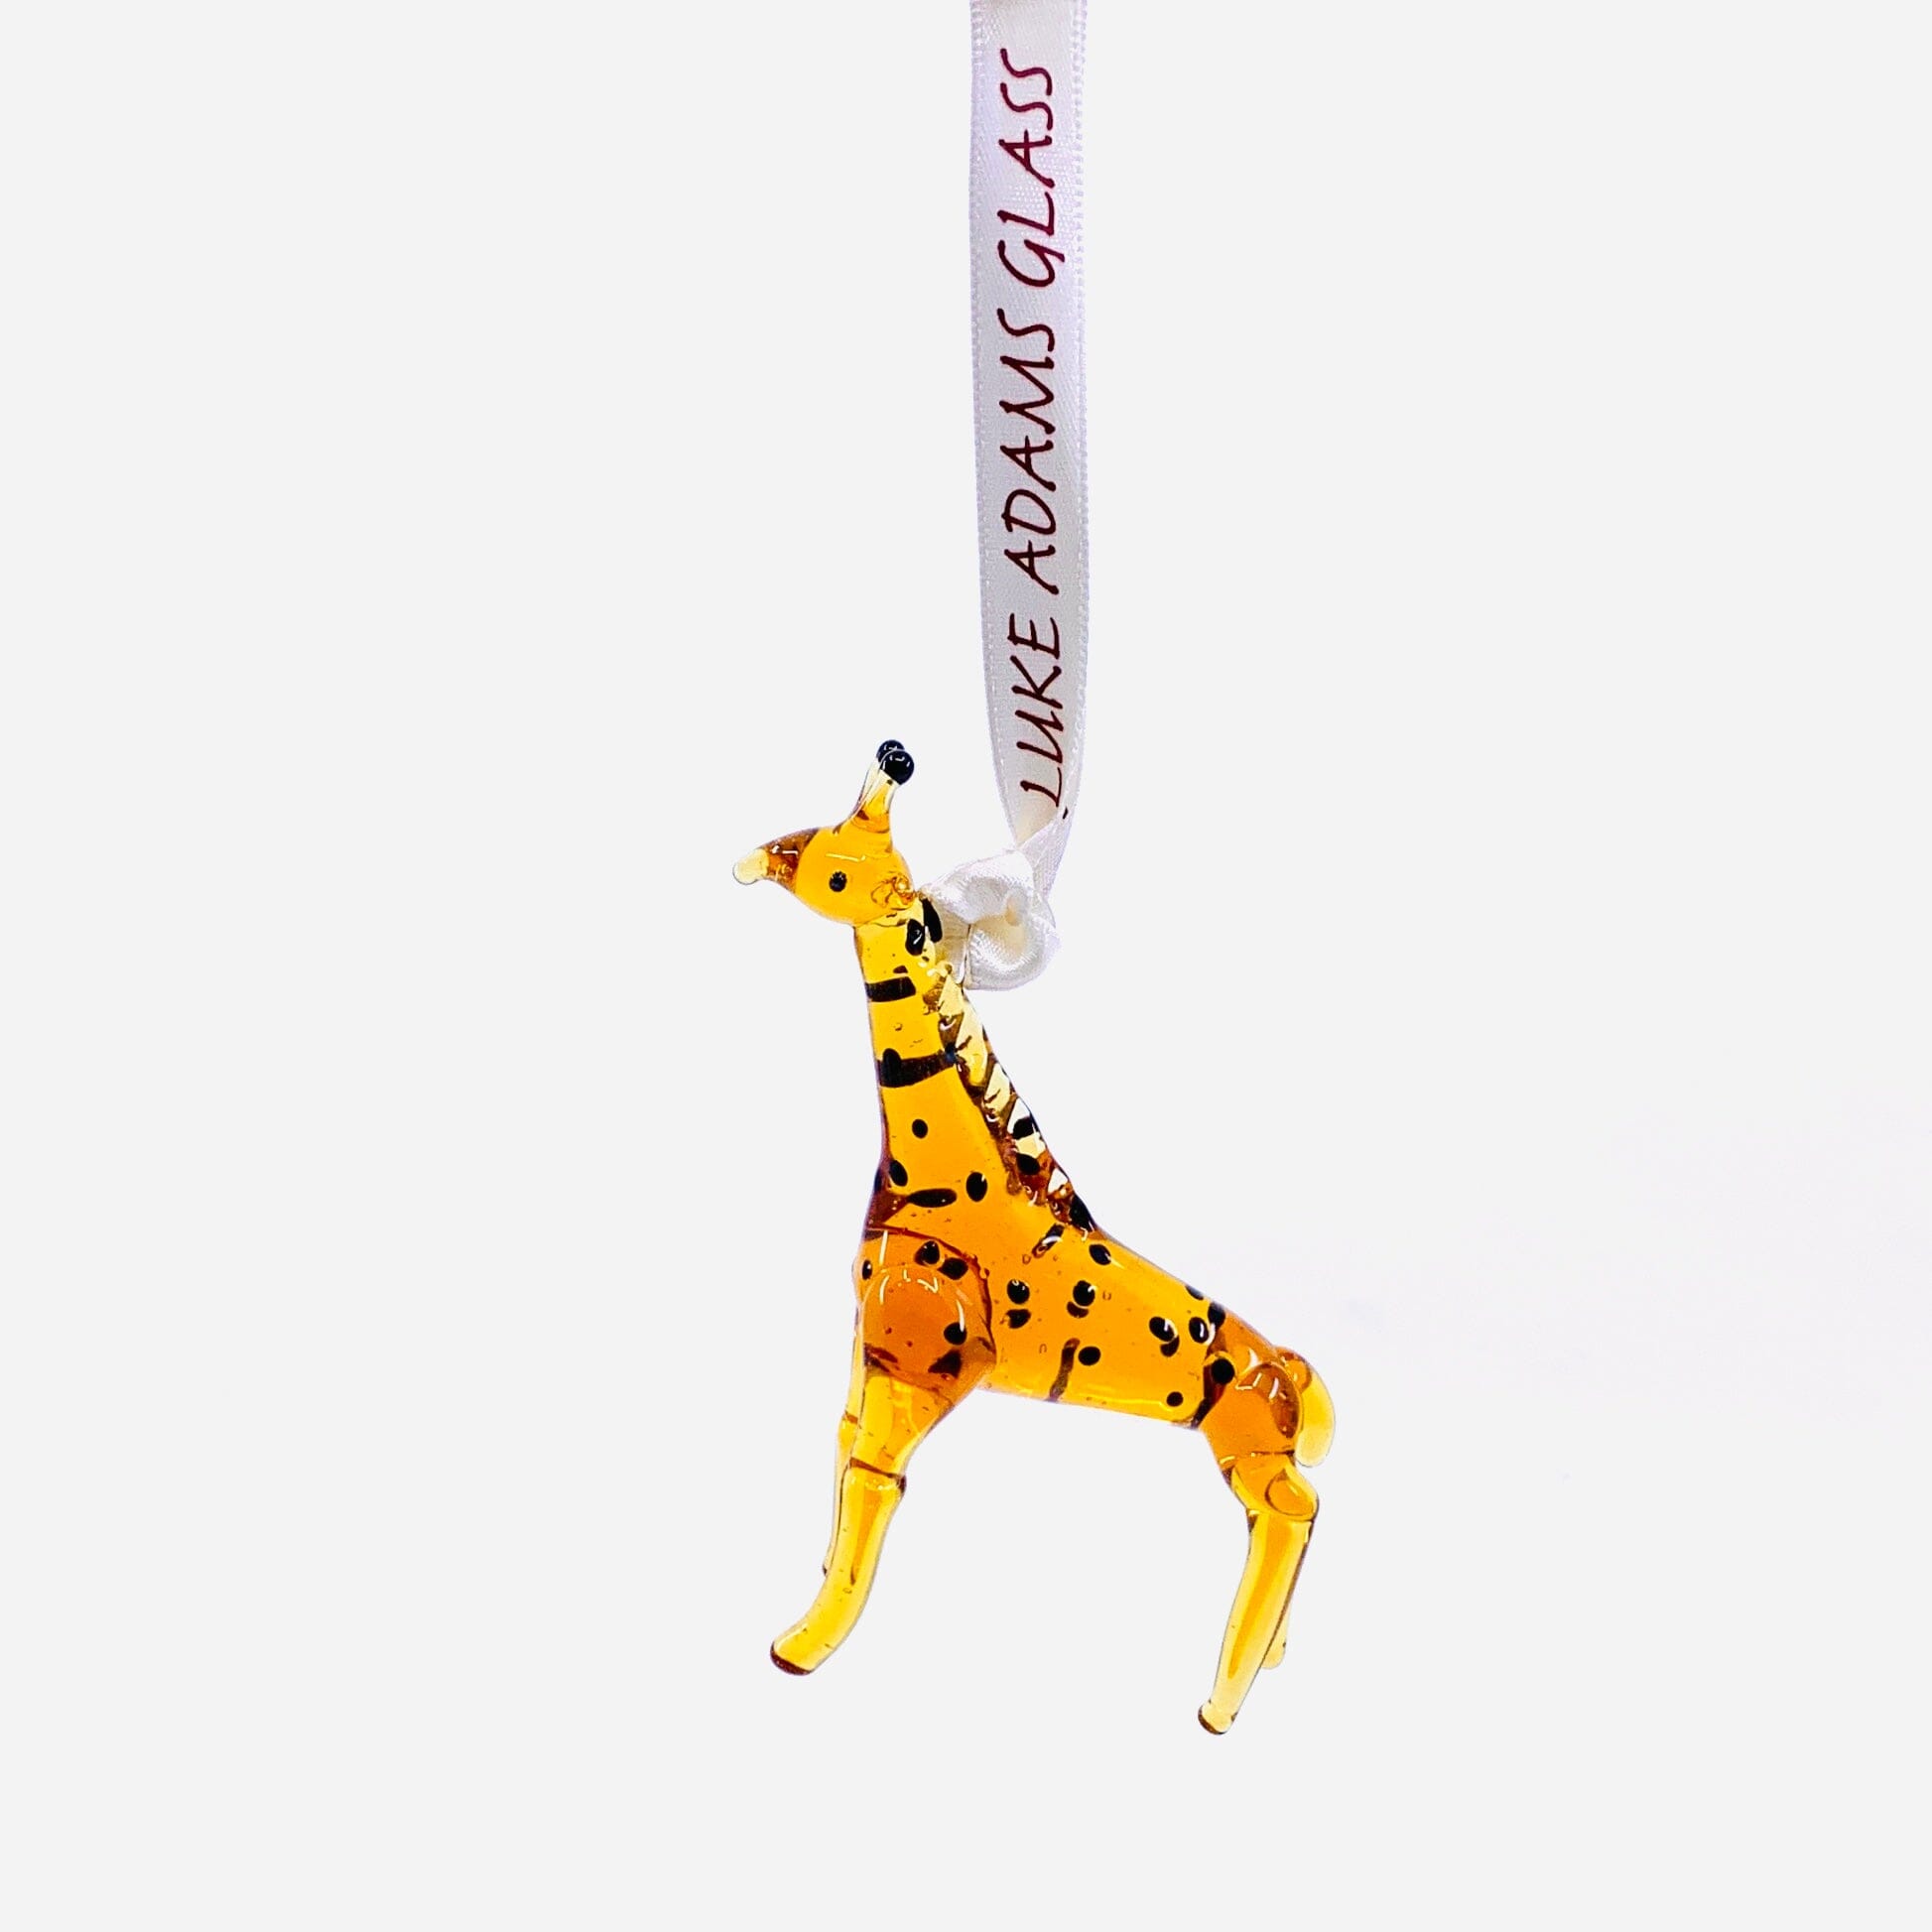 Ribbon Glass Ornament, Giraffe Art Studio 